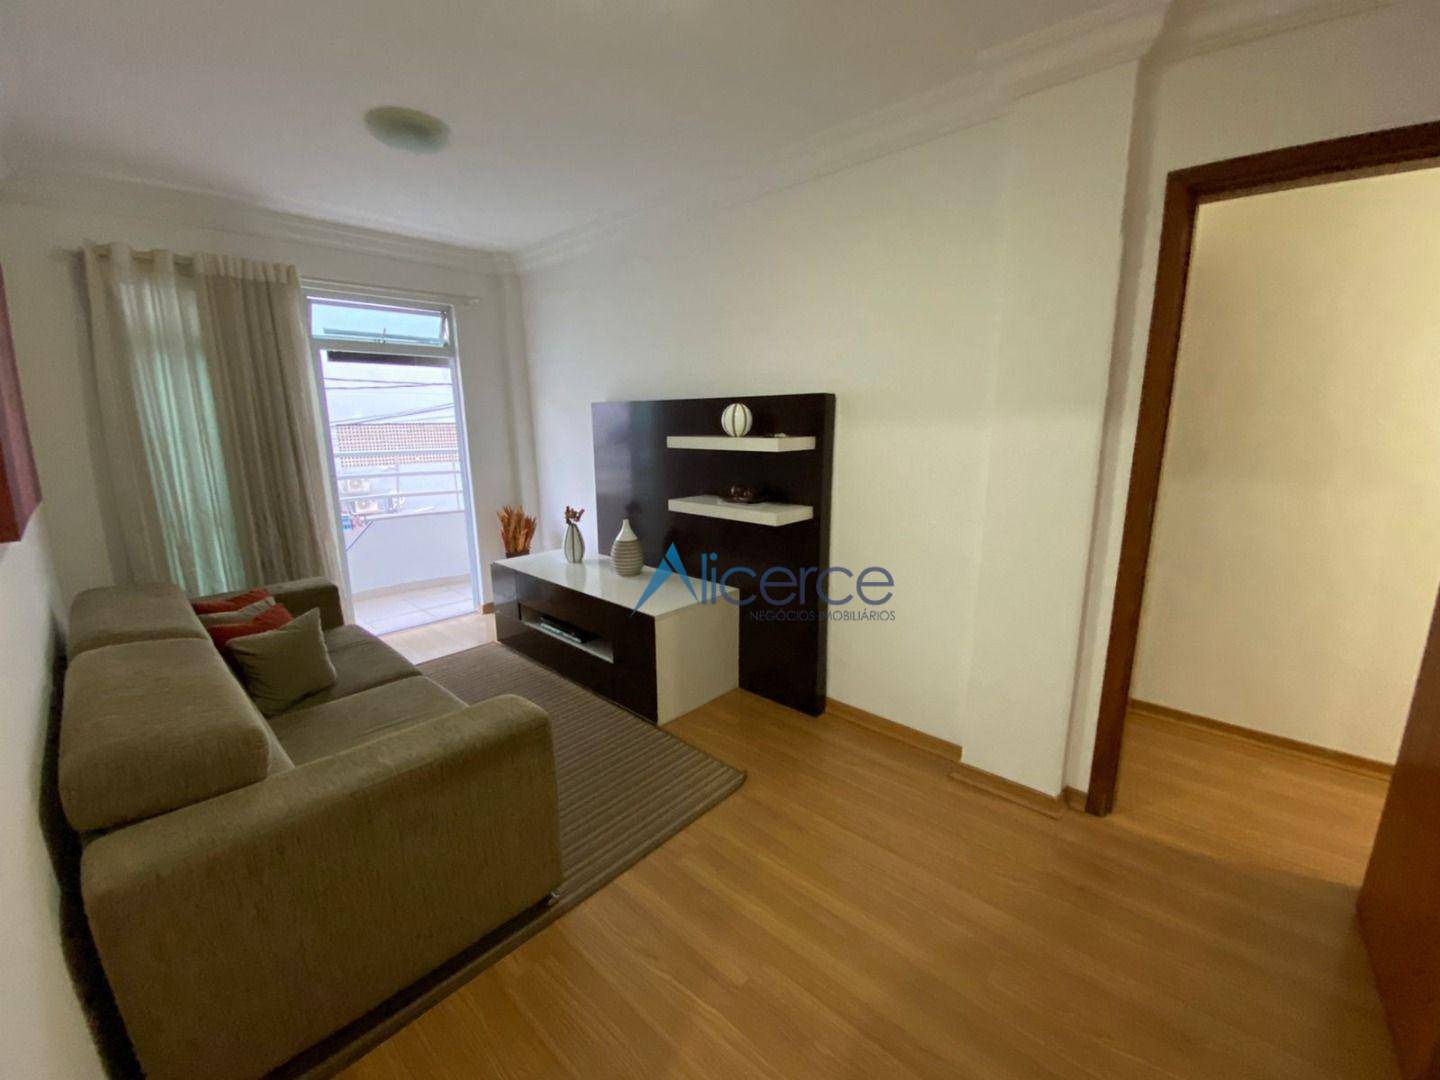 Apartamento com 3 dormitórios à venda, 95 m² por R$ 389.000,00 - São Mateus - Juiz de Fora/MG